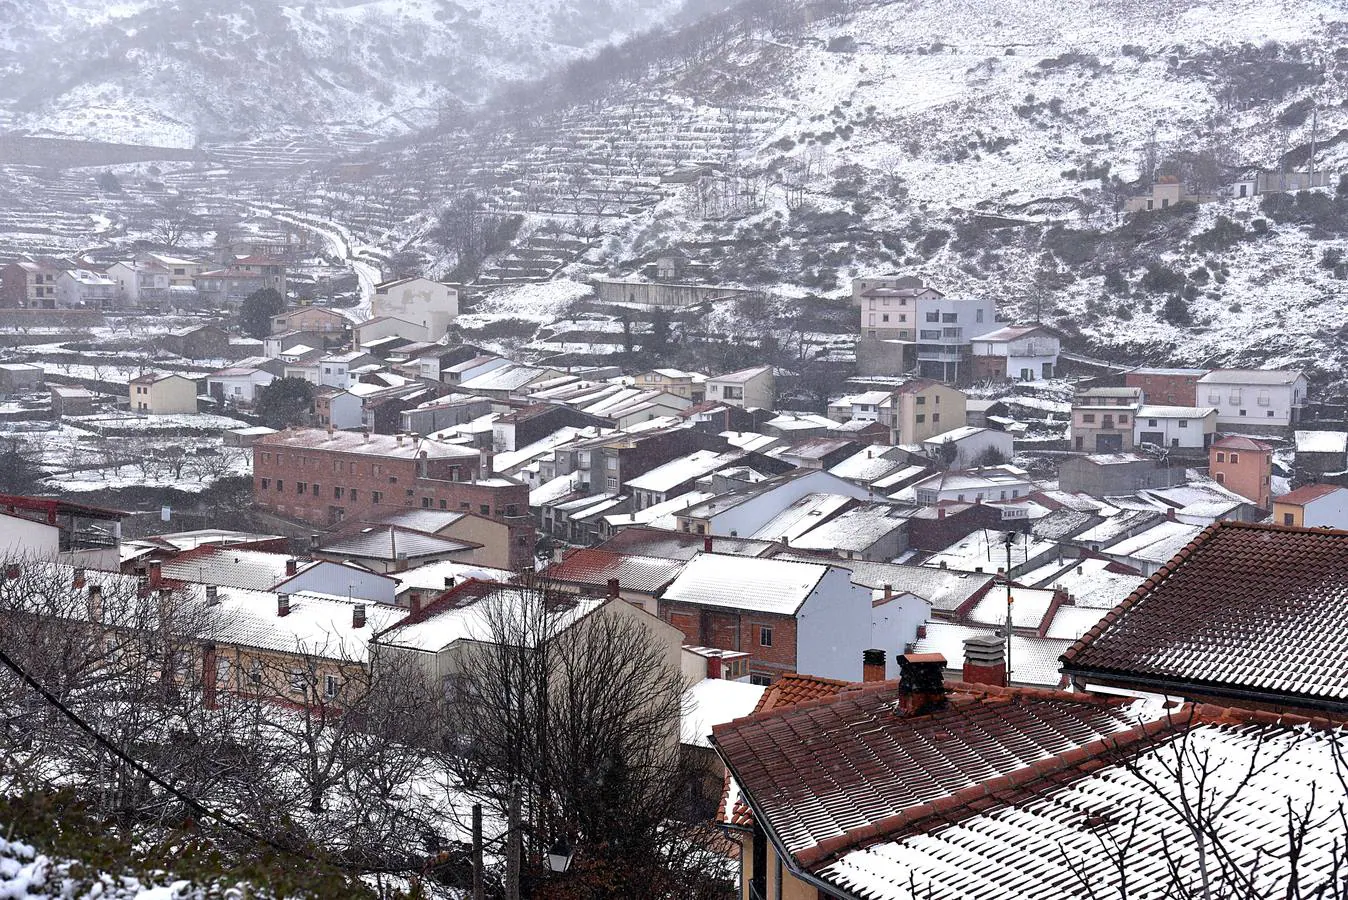 El temporal de nieve que azota a media España ha llegado a localidades del norte como Piornal o Hervás, del este a Siruela y en el sur a Monesterio